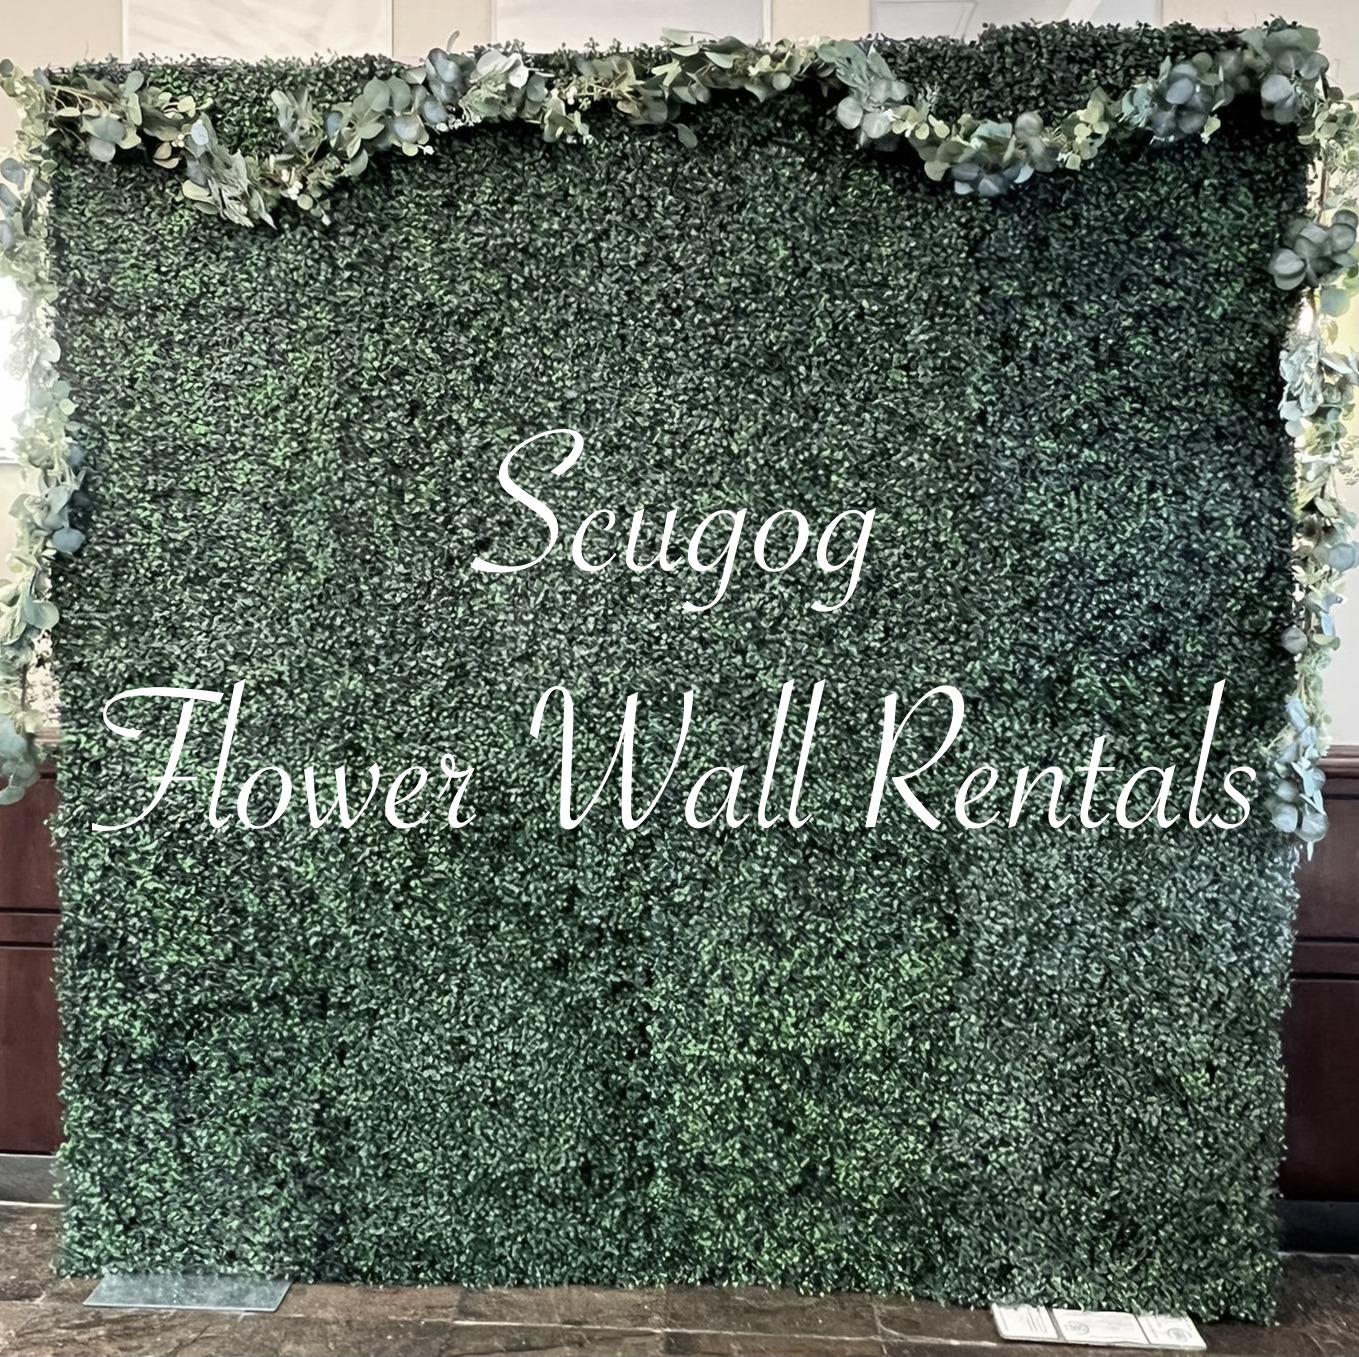 Scugog flower wall rentals